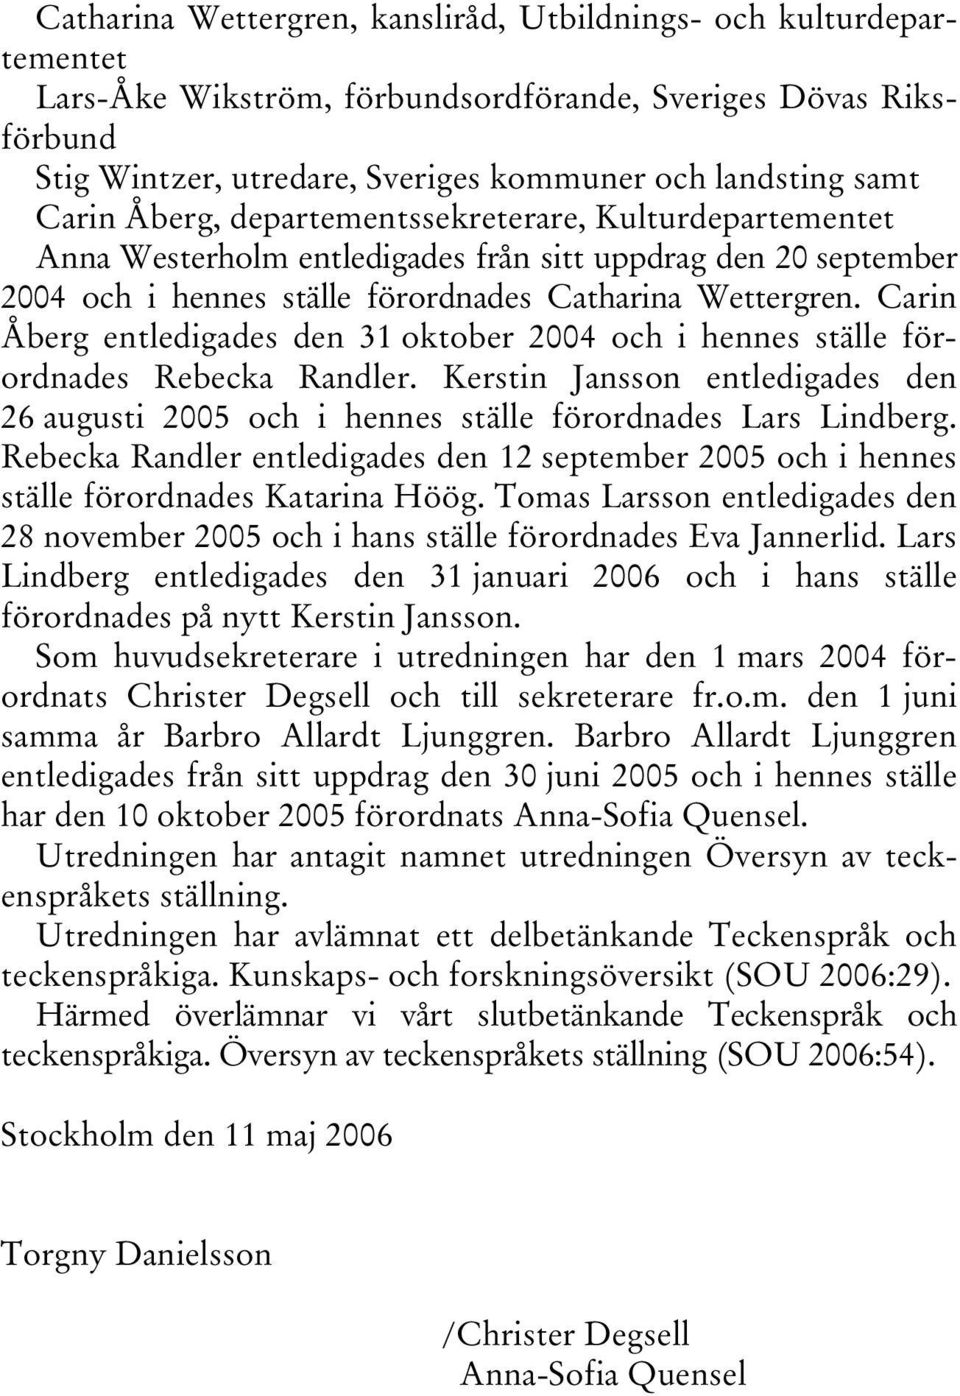 Carin Åberg entledigades den 31 oktober 2004 och i hennes ställe förordnades Rebecka Randler. Kerstin Jansson entledigades den 26 augusti 2005 och i hennes ställe förordnades Lars Lindberg.